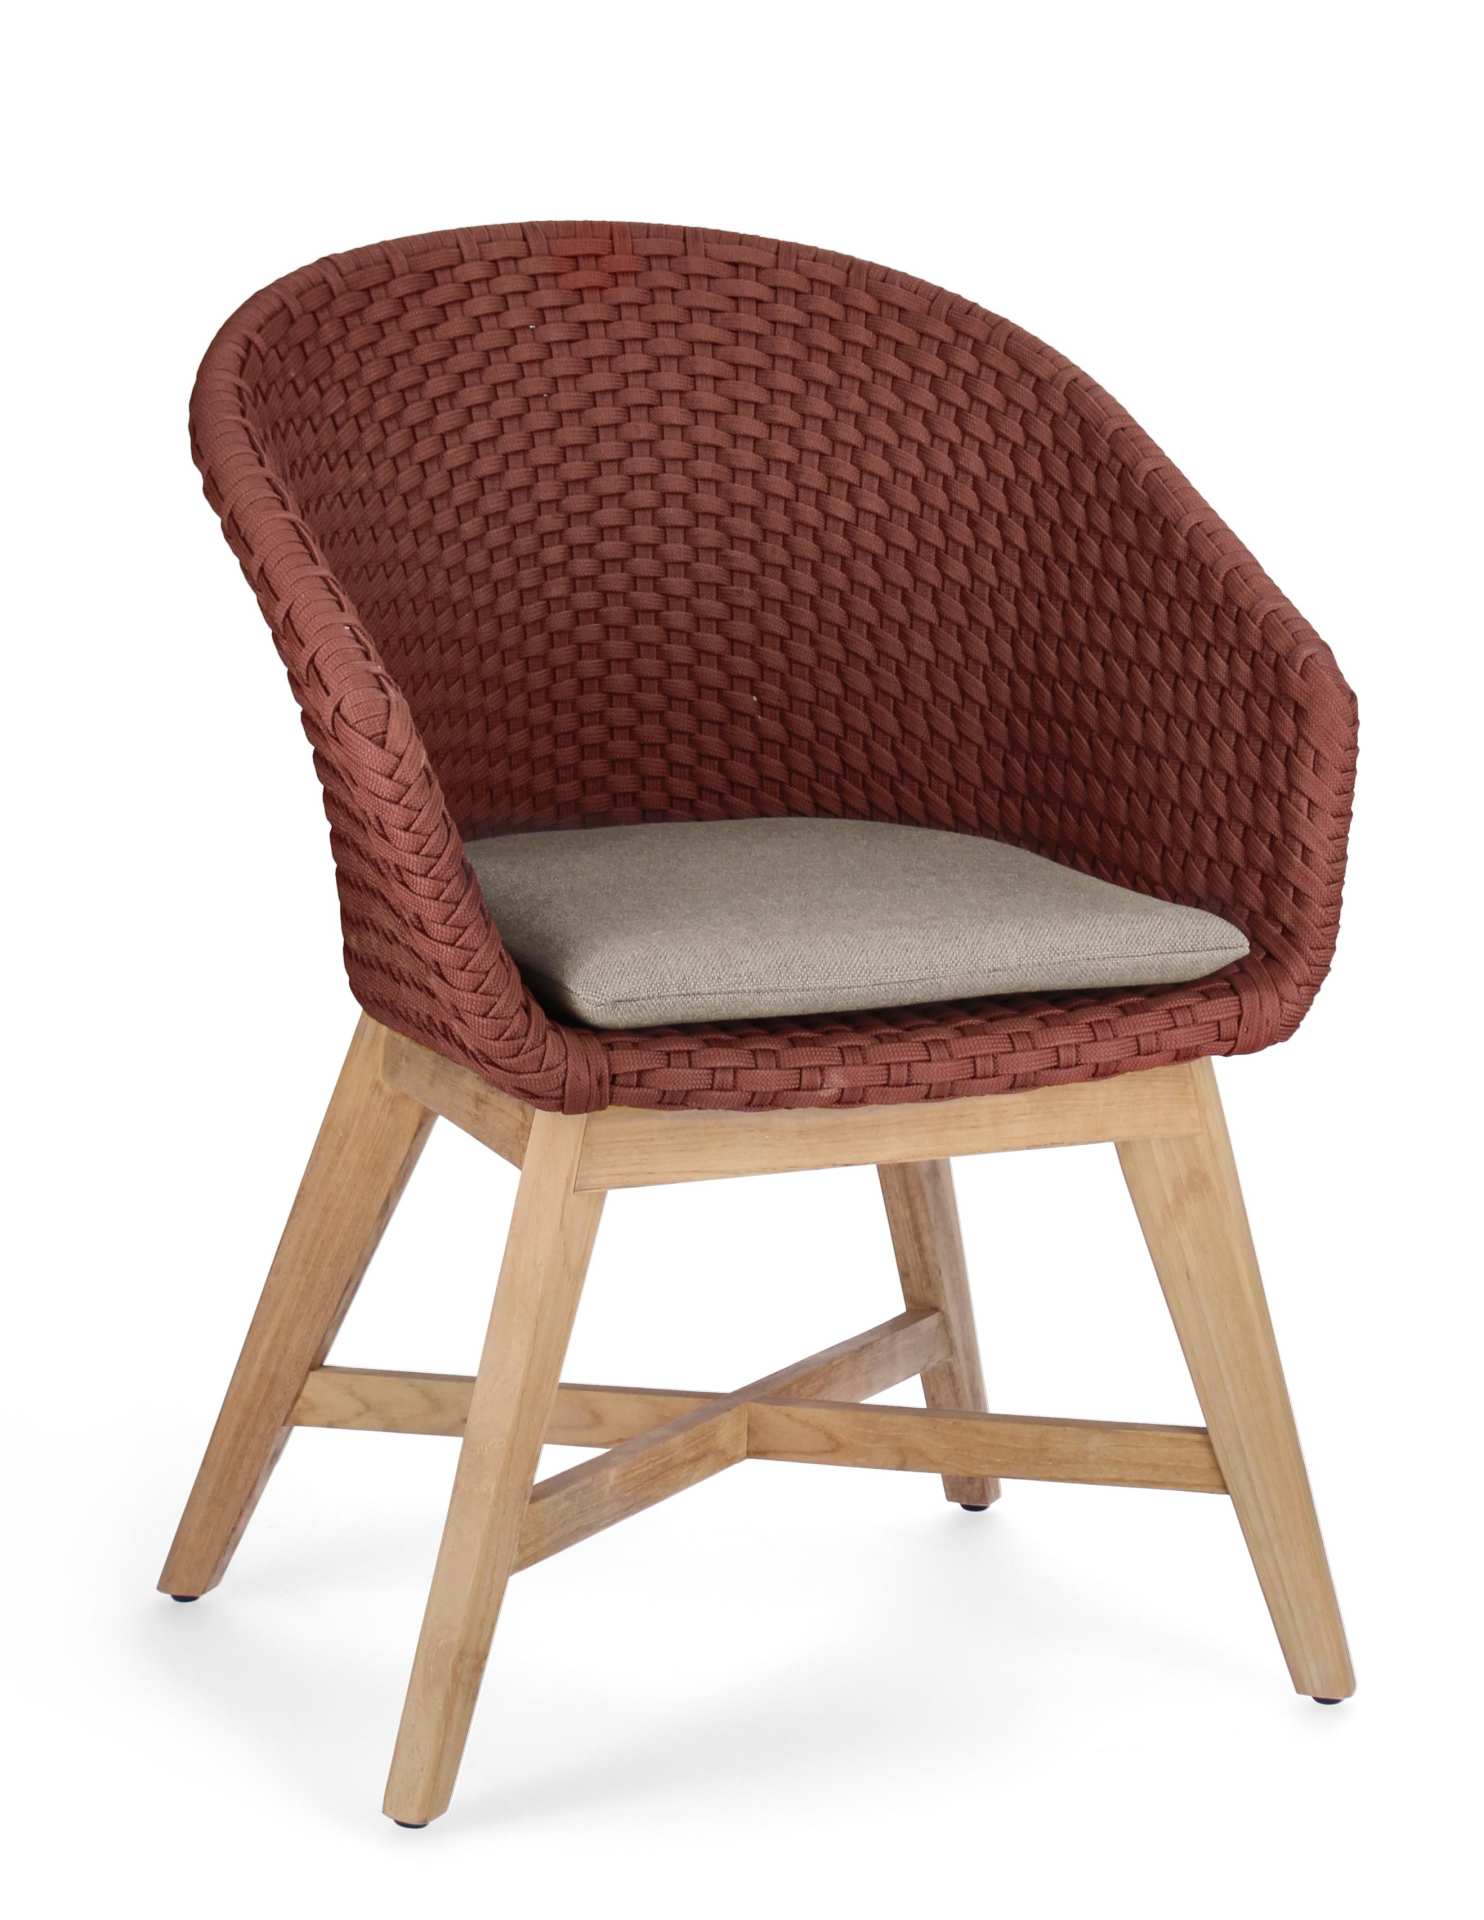 Der Gartenstuhl Coachella überzeugt mit seinem modernen Design. Gefertigt wurde er aus Olefin-Stoff, welcher einen roten Farbton besitzt. Das Gestell ist aus Teakholz und hat eine natürliche Farbe. Der Stuhl verfügt über eine Sitzhöhe von 46 cm und ist fü